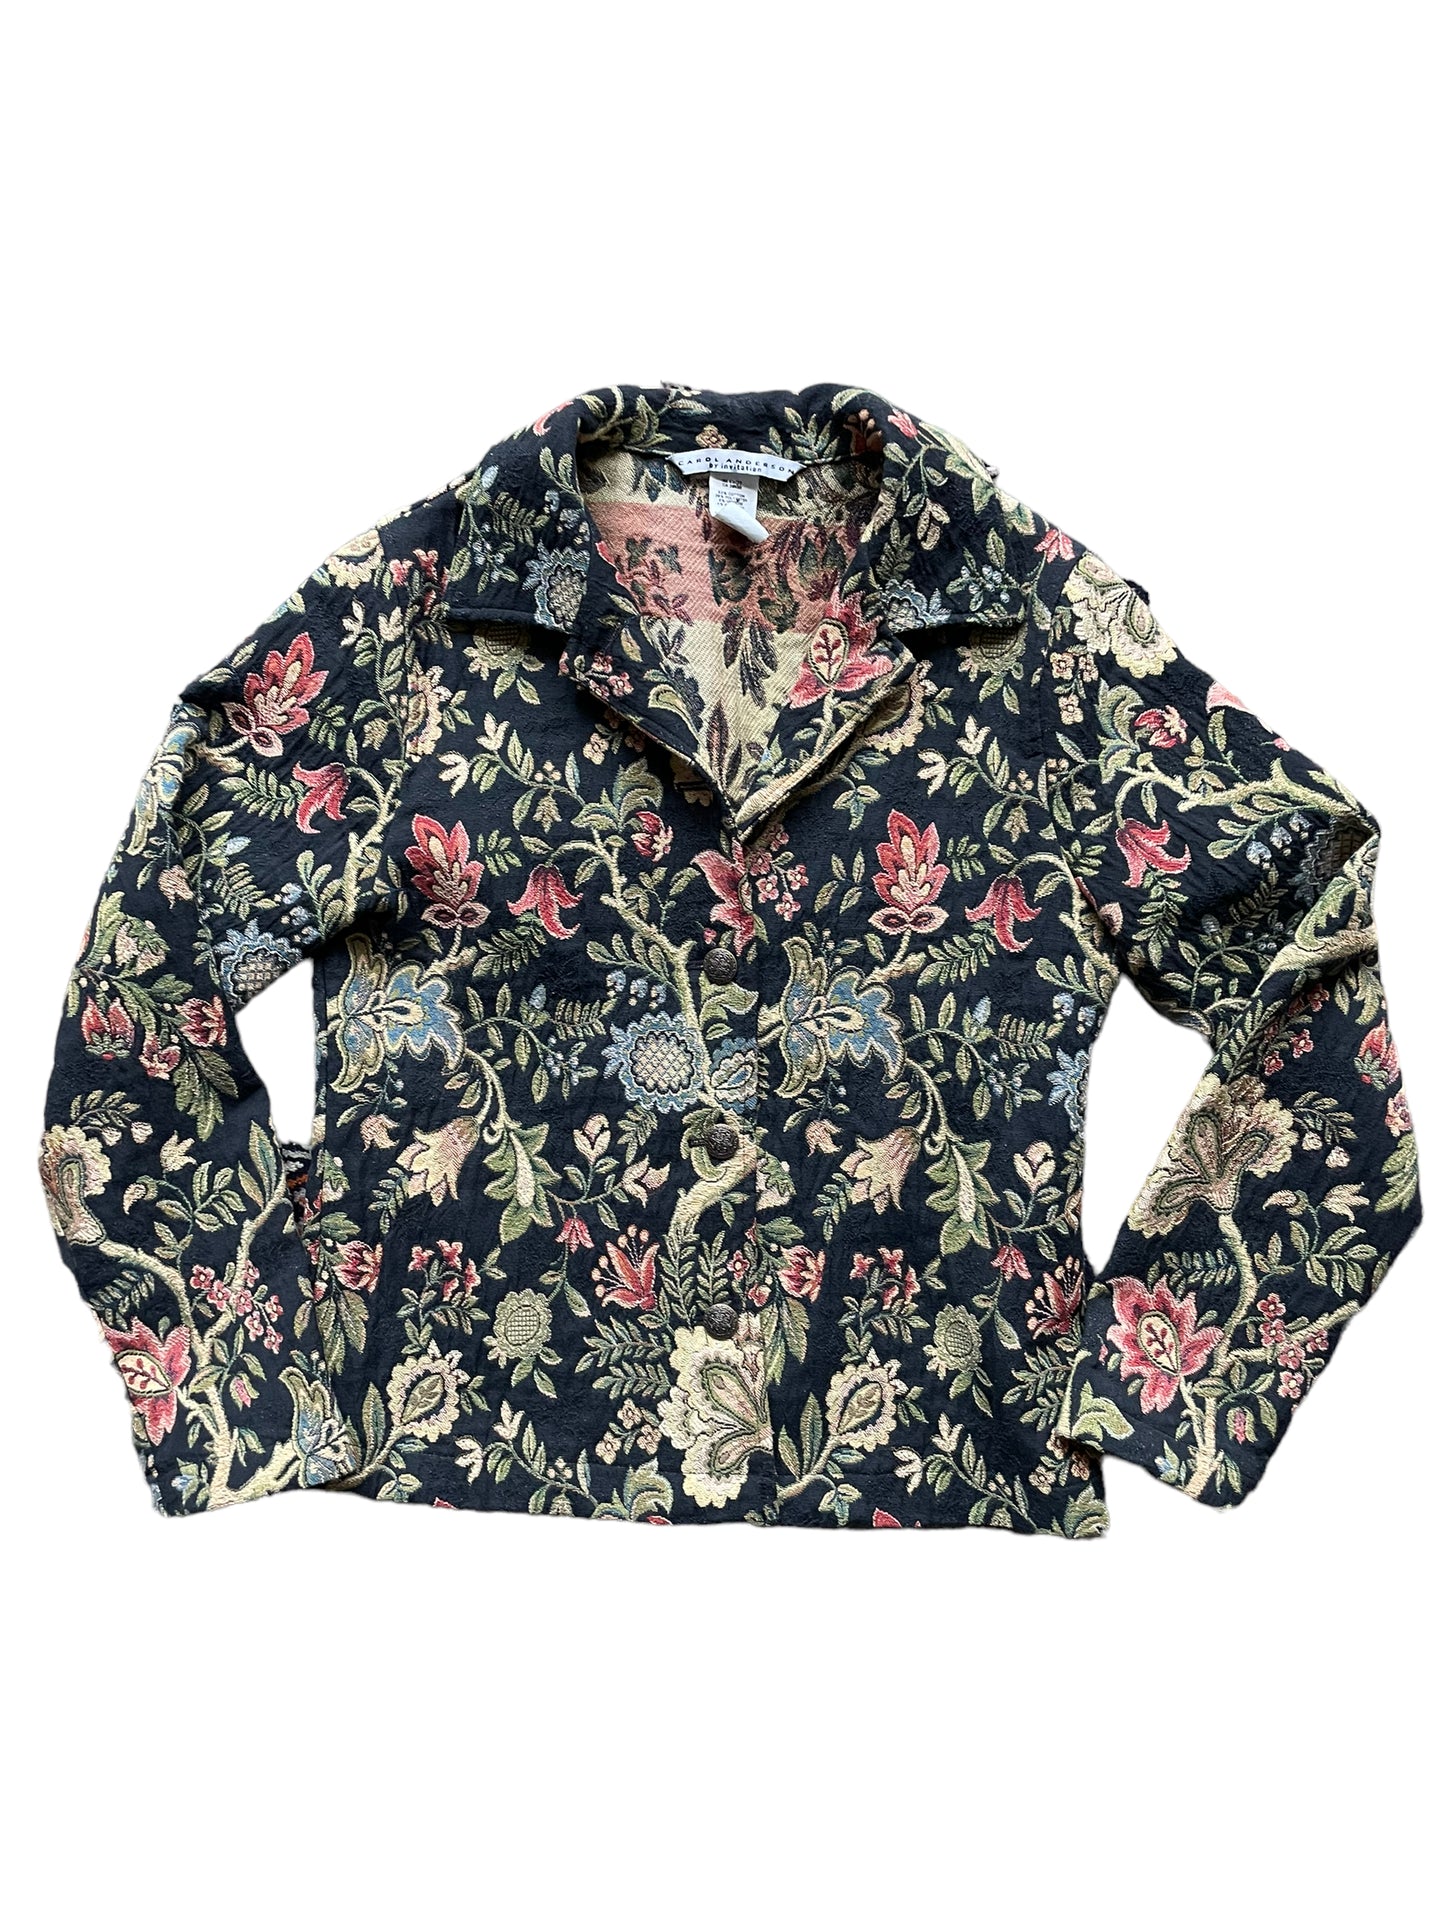 Full front view of Vintage 90s Ladies Tapestry Jacket | Seattle True Vintage | Barn Owl Ladies Clothing